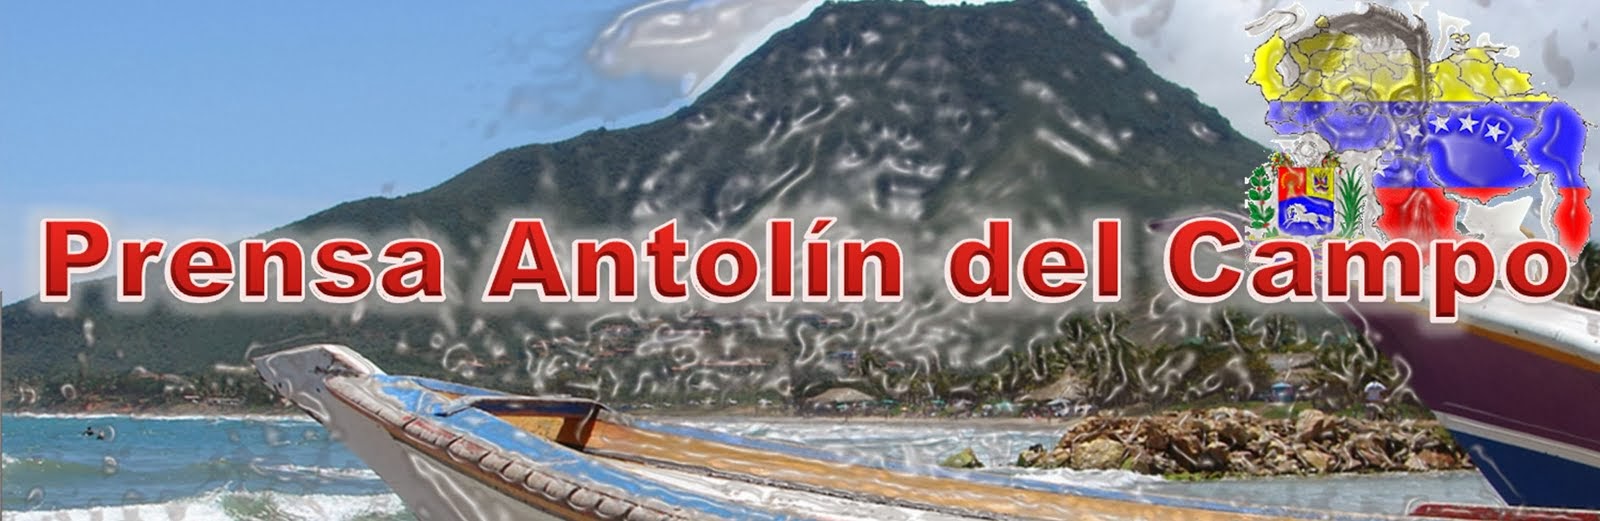 Prensa Antolin Del Campo 